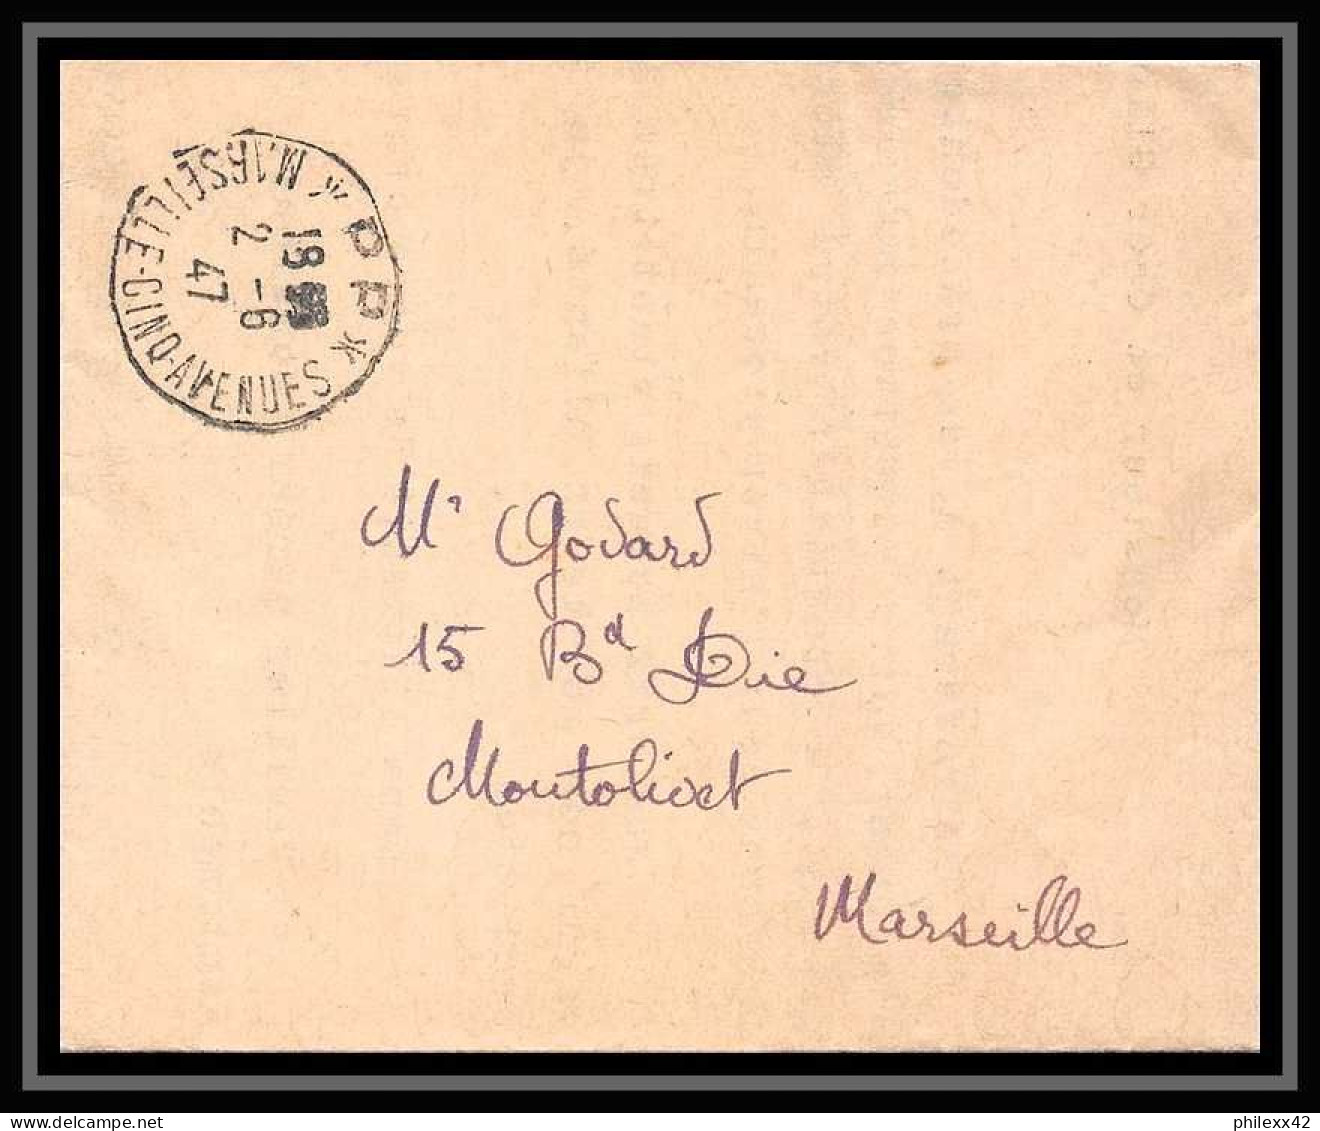 110354 lot de 27 lettres dont recommandé Carte postale (postcard) Bouches du rhone Marseille chave gare ... 